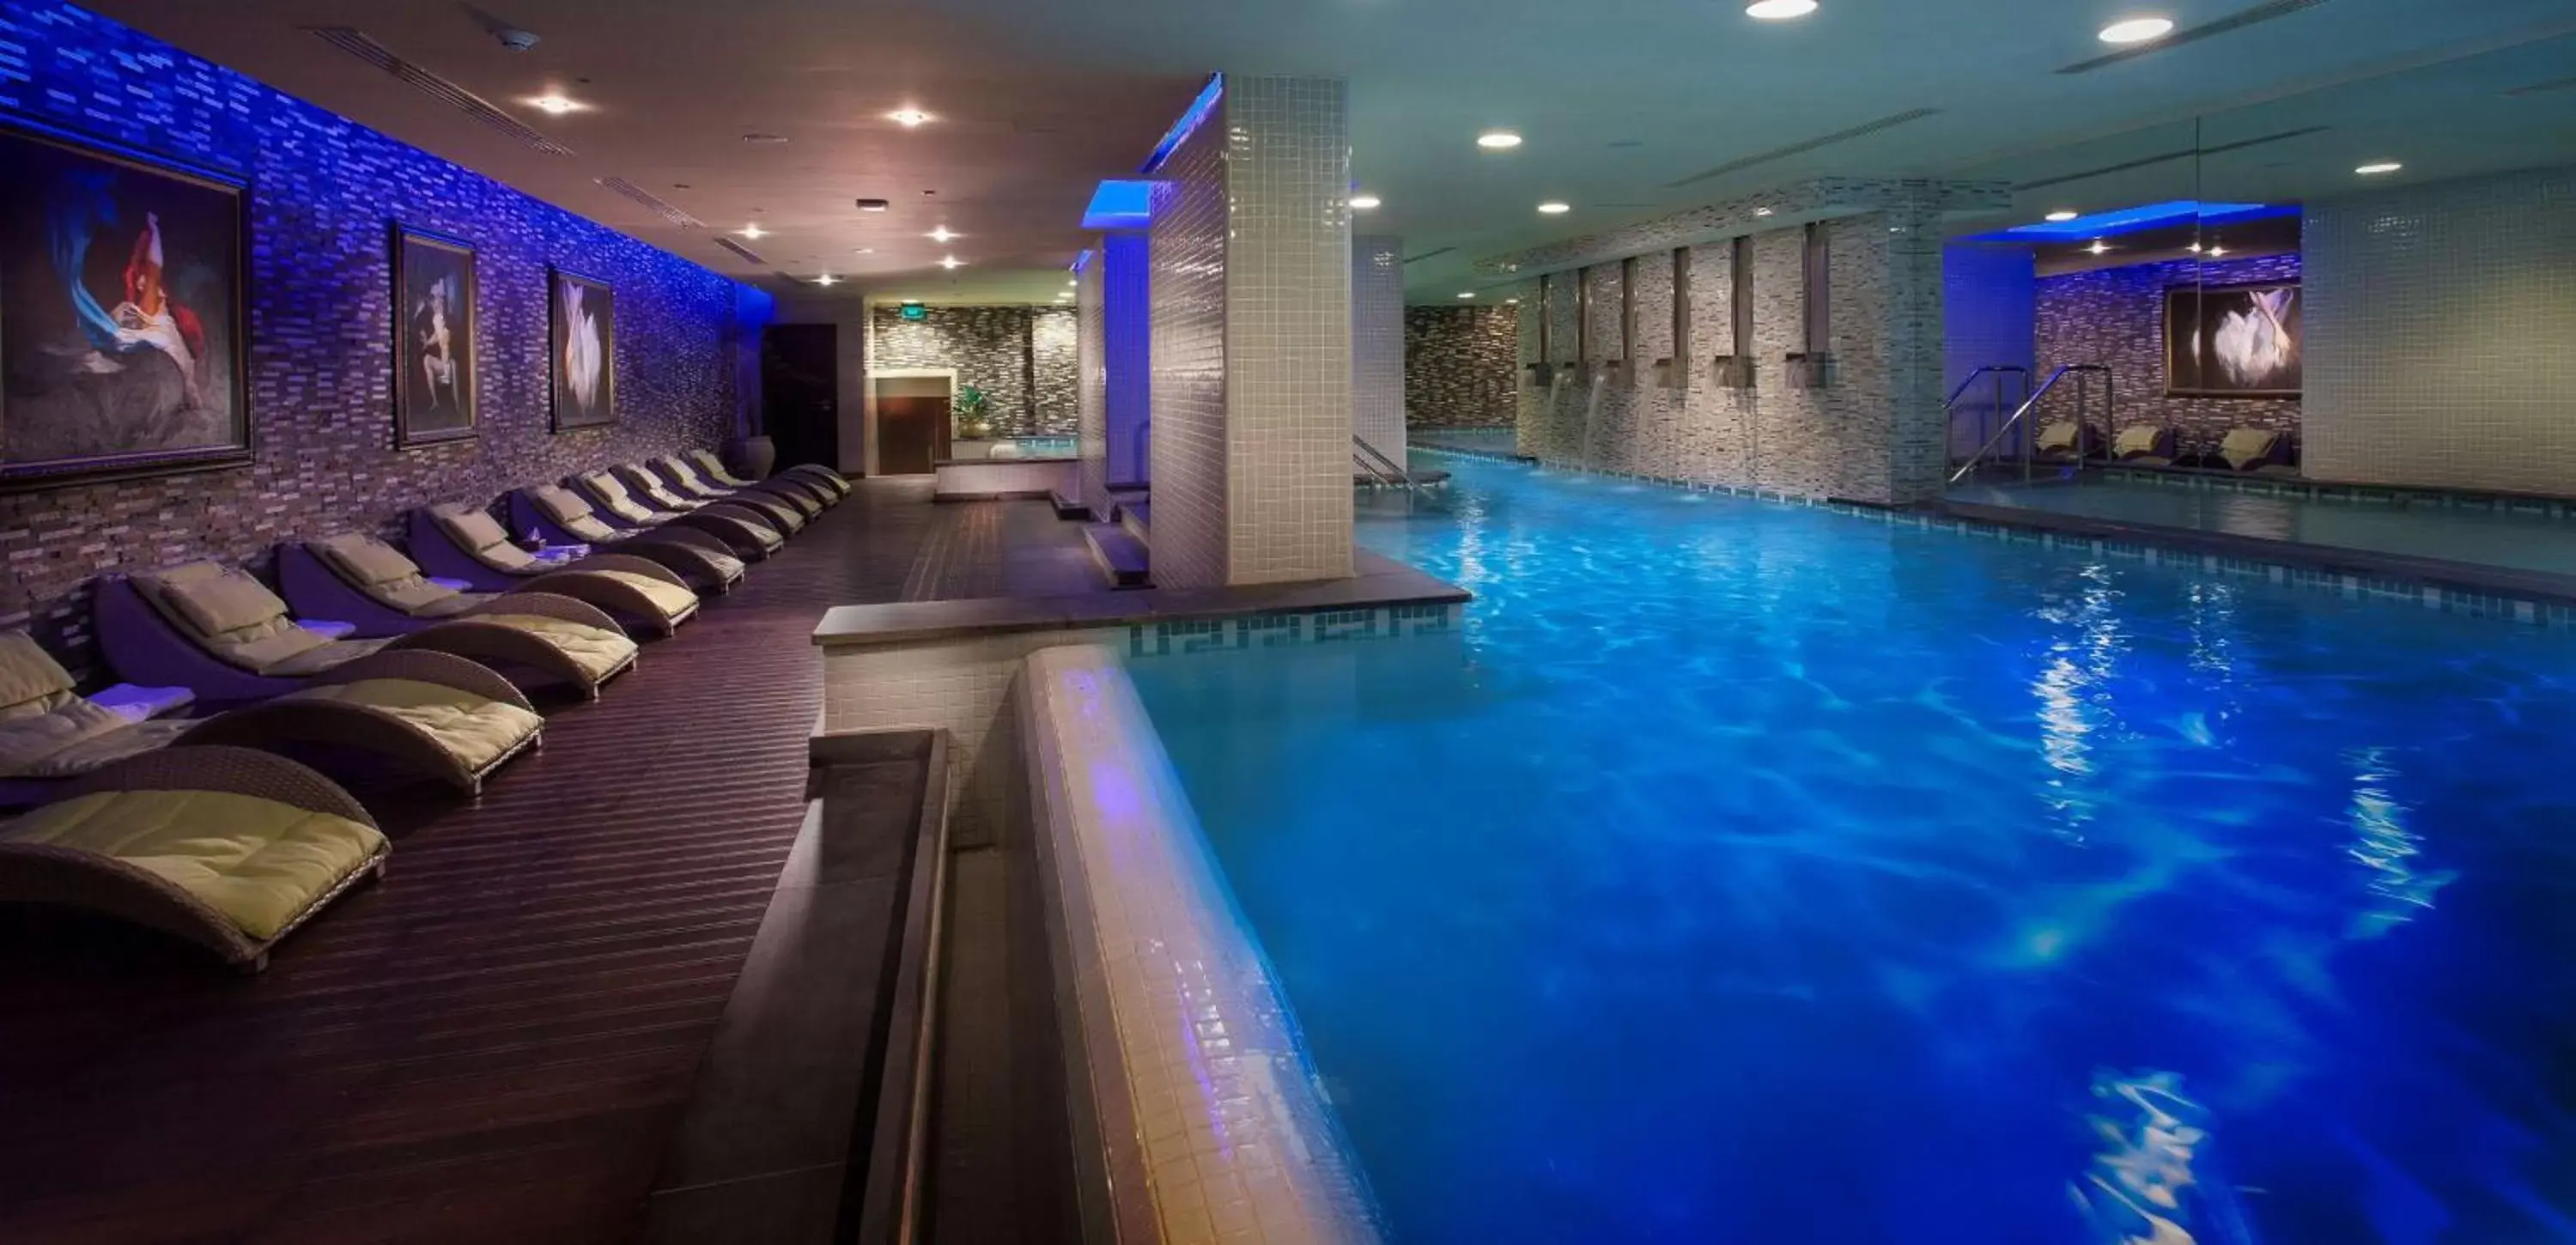 Spa and wellness centre/facilities, Swimming Pool in Royal Maxim Palace Kempinski Cairo